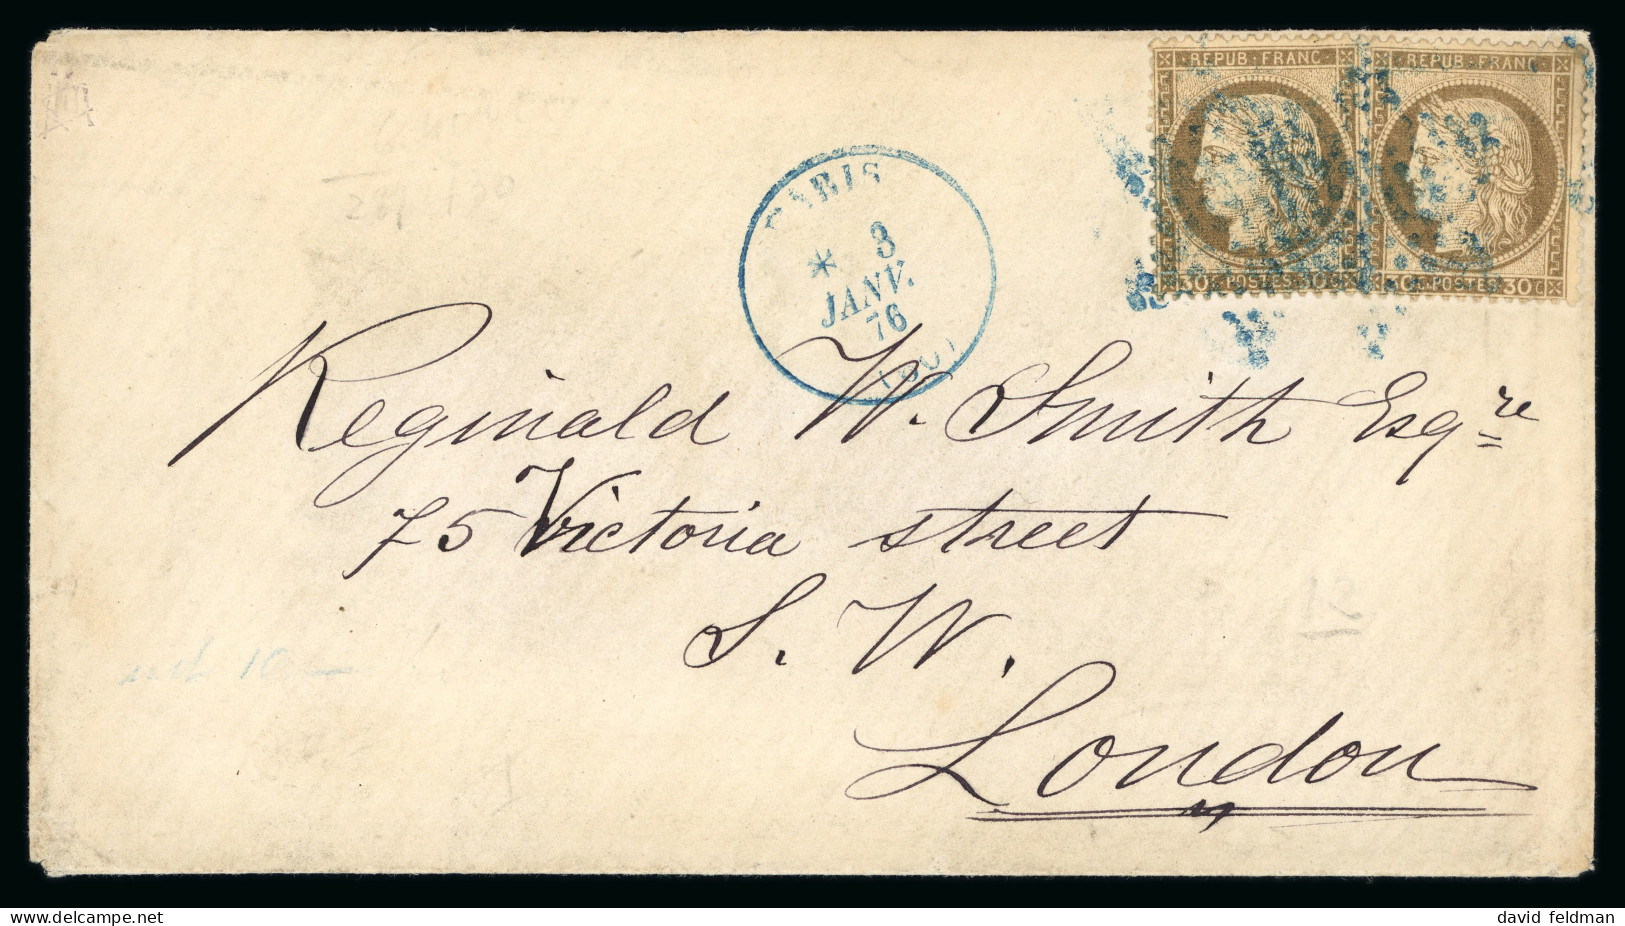 1876, Lettre Pour Londres, Affranchissement Cérès Dentelé - 1871-1875 Ceres